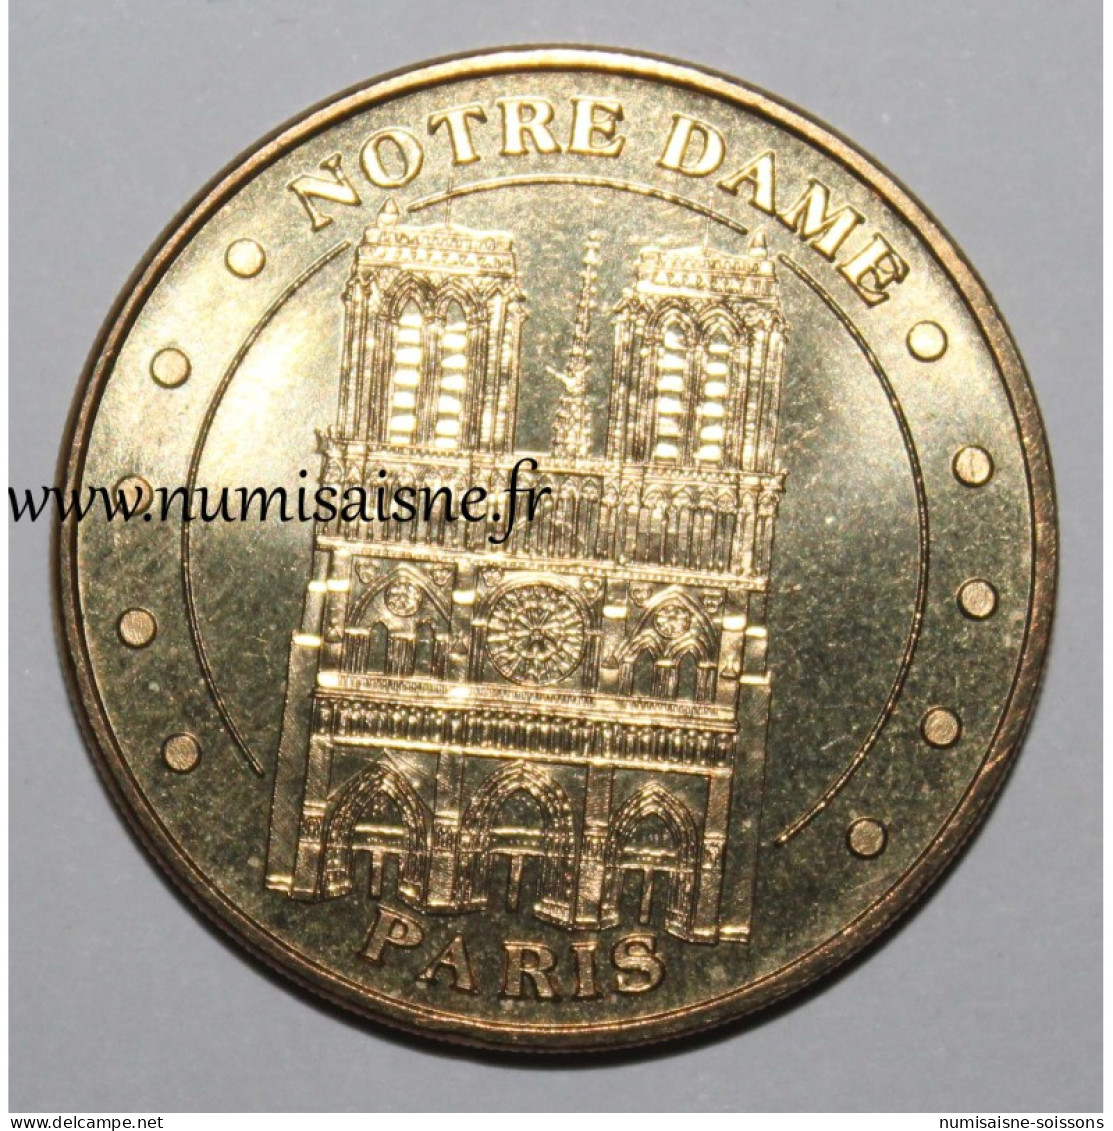 75 - PARIS - CATHEDRALE NOTRE DAME - Monnaie De Paris - 2013 - 2013